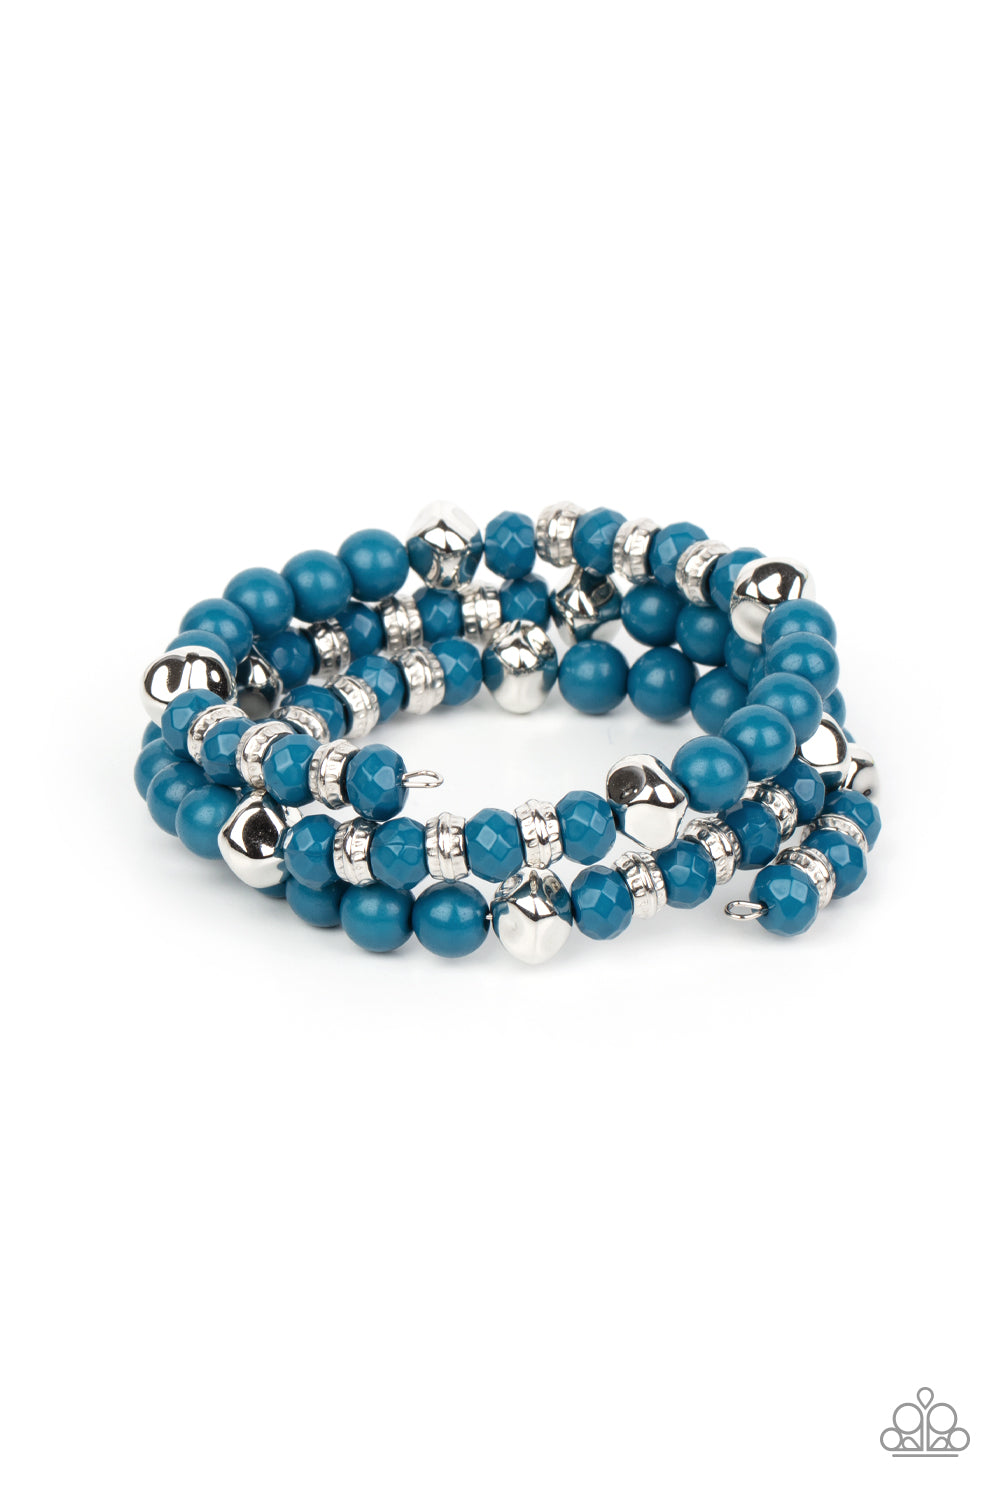 Paparazzi - Vibrant Verve - Blue Coil Bracelet - Alies Bling Bar